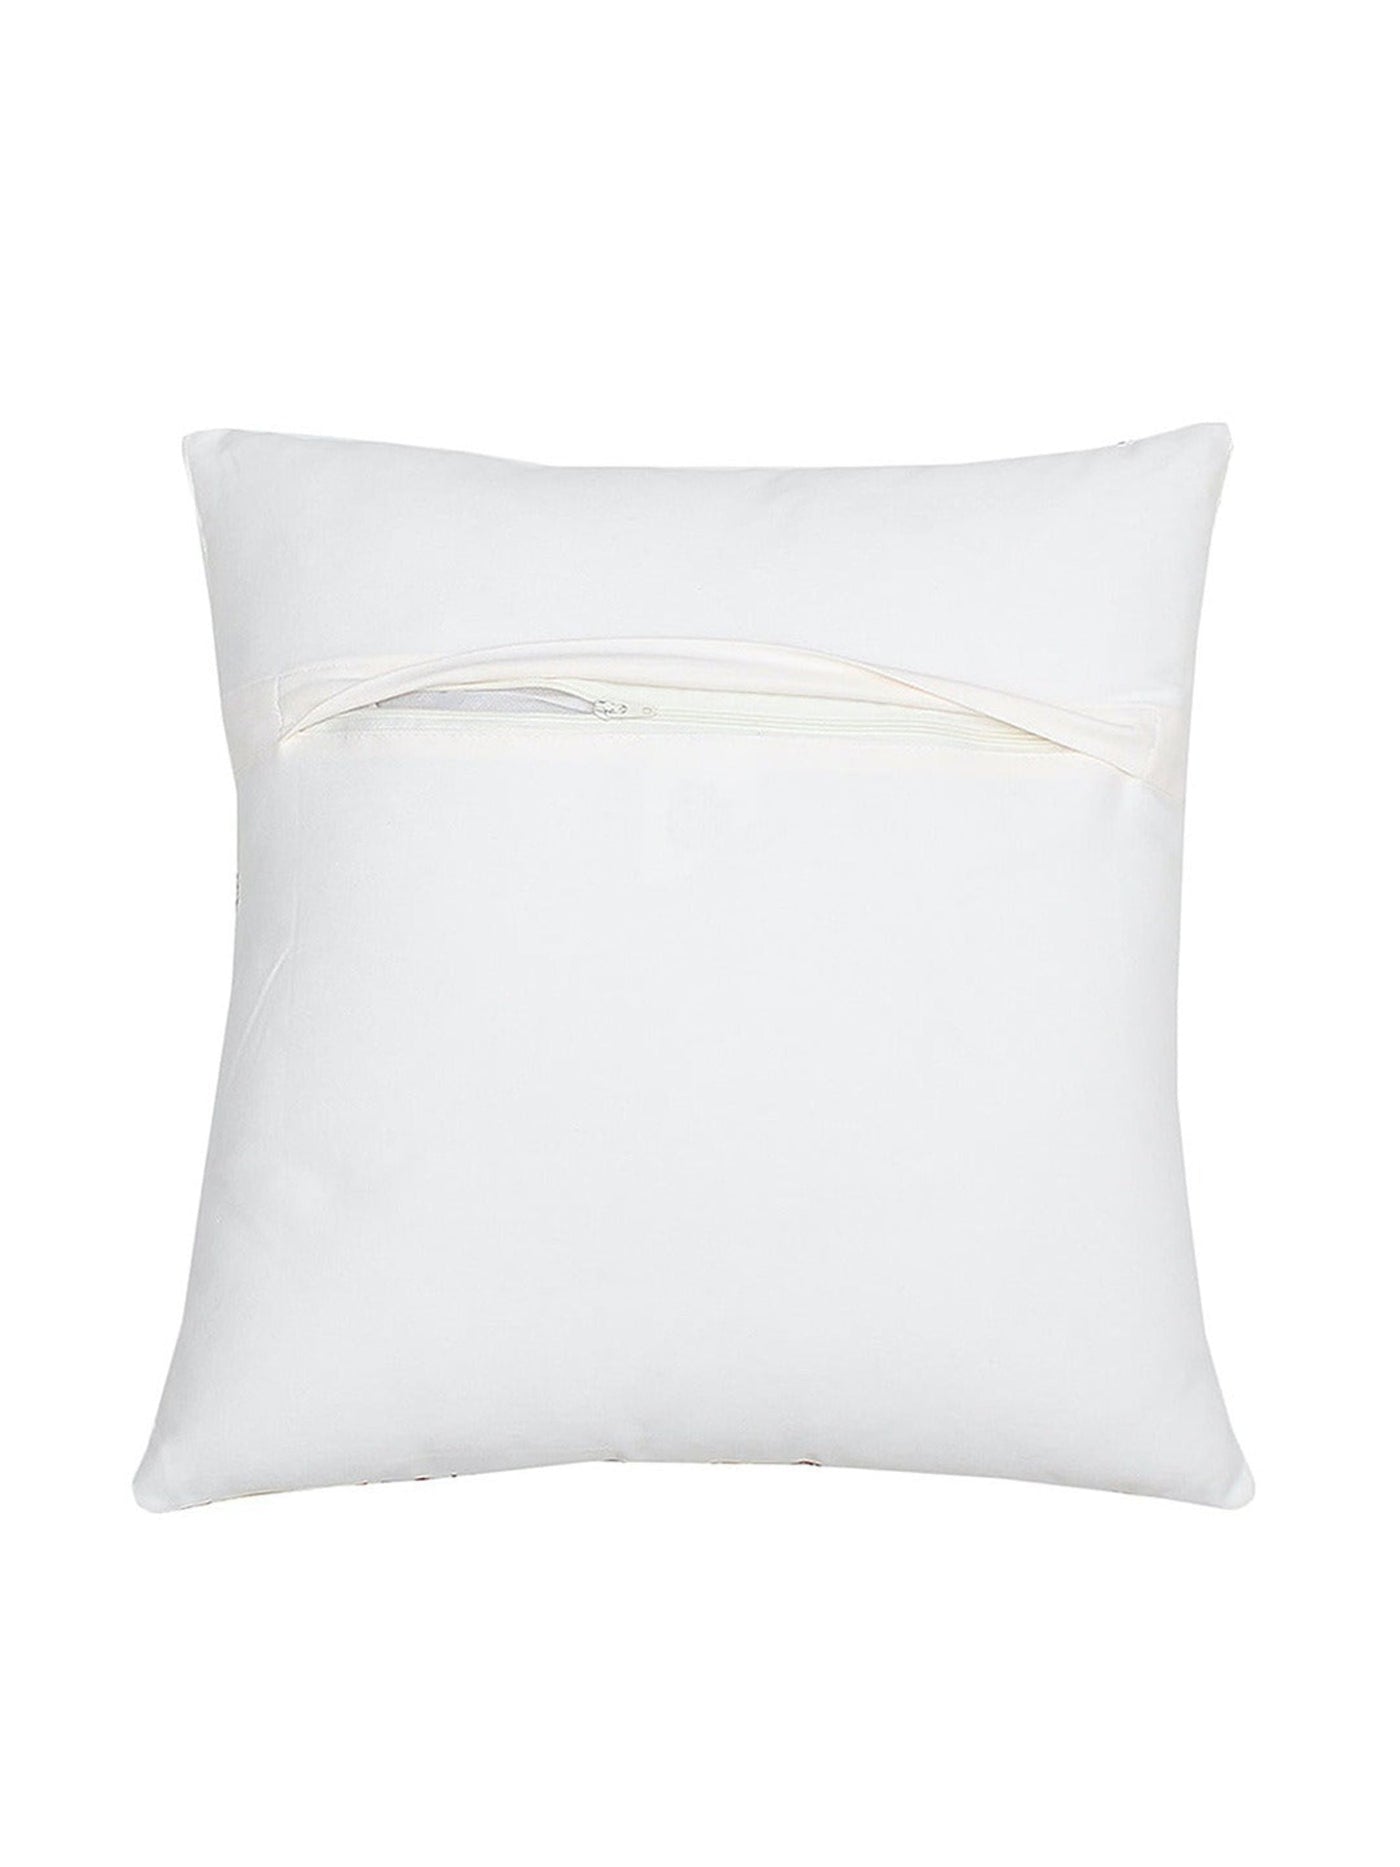 Cushion Cover - Keukenhof Flowerfield Cotton 2 s-Yellow-8903773001118